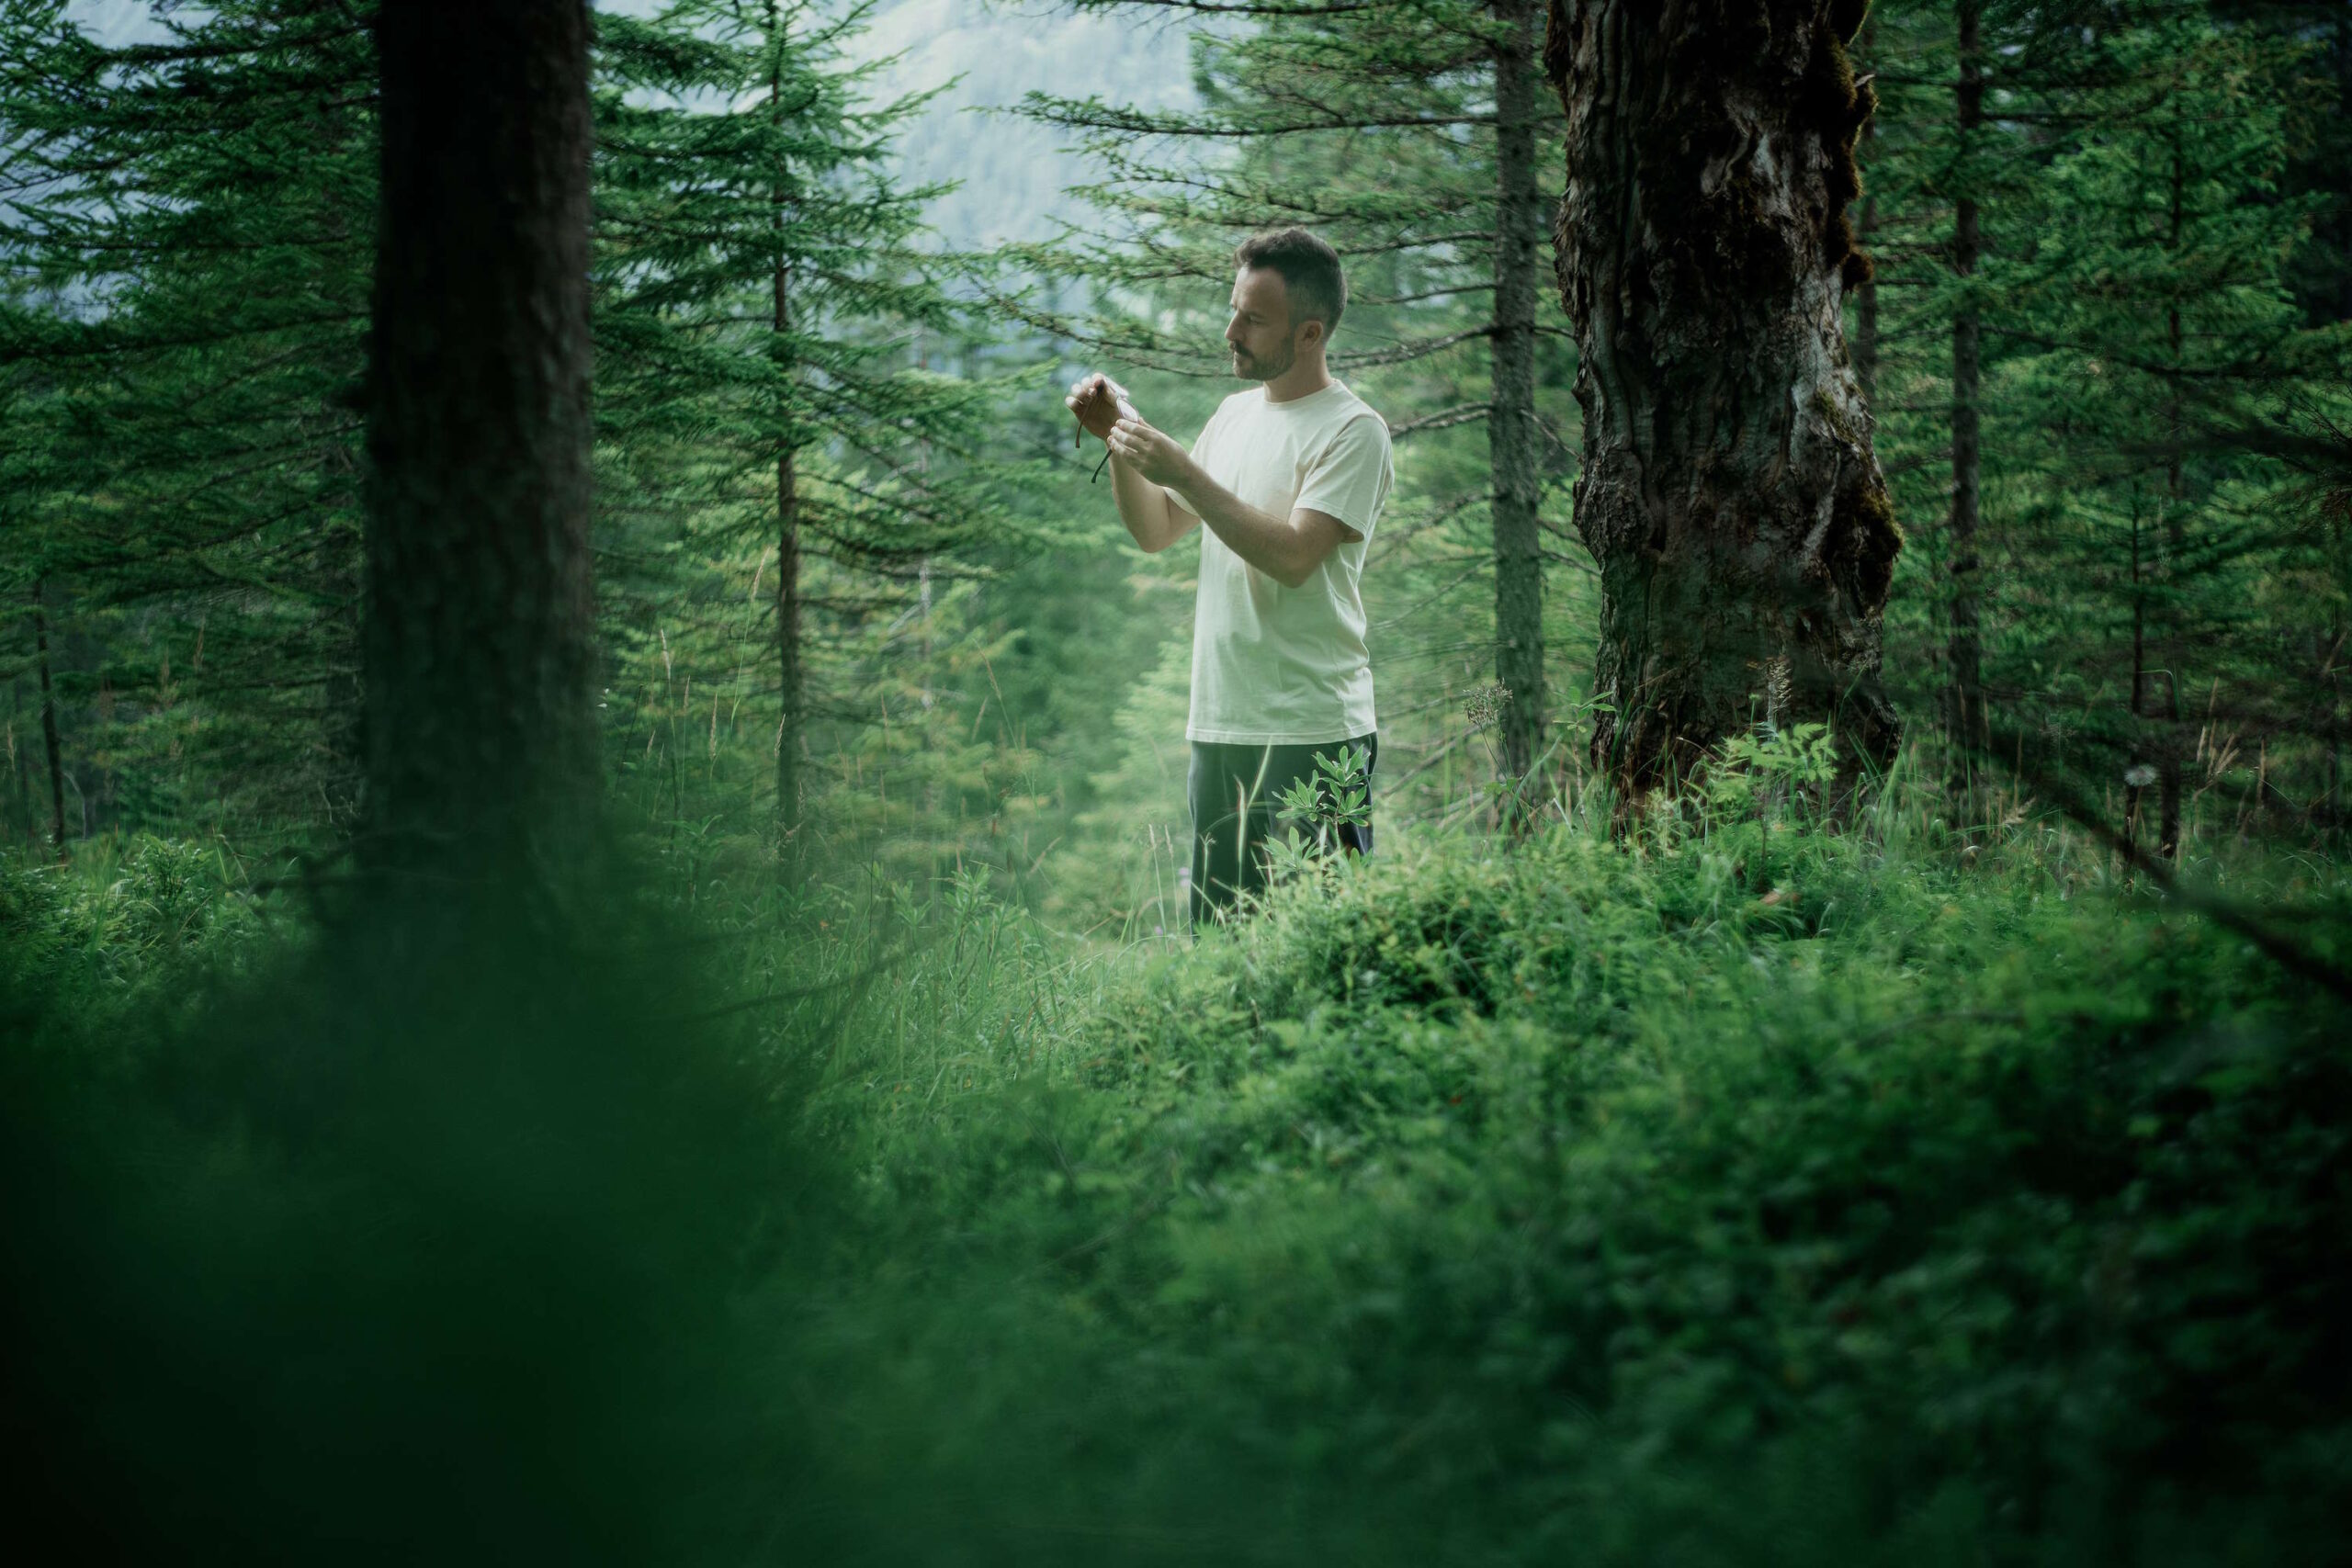 Mann in weißem Shirt betrachtet seine wiedergefundene Brille in seinen Händen im dichten Wald